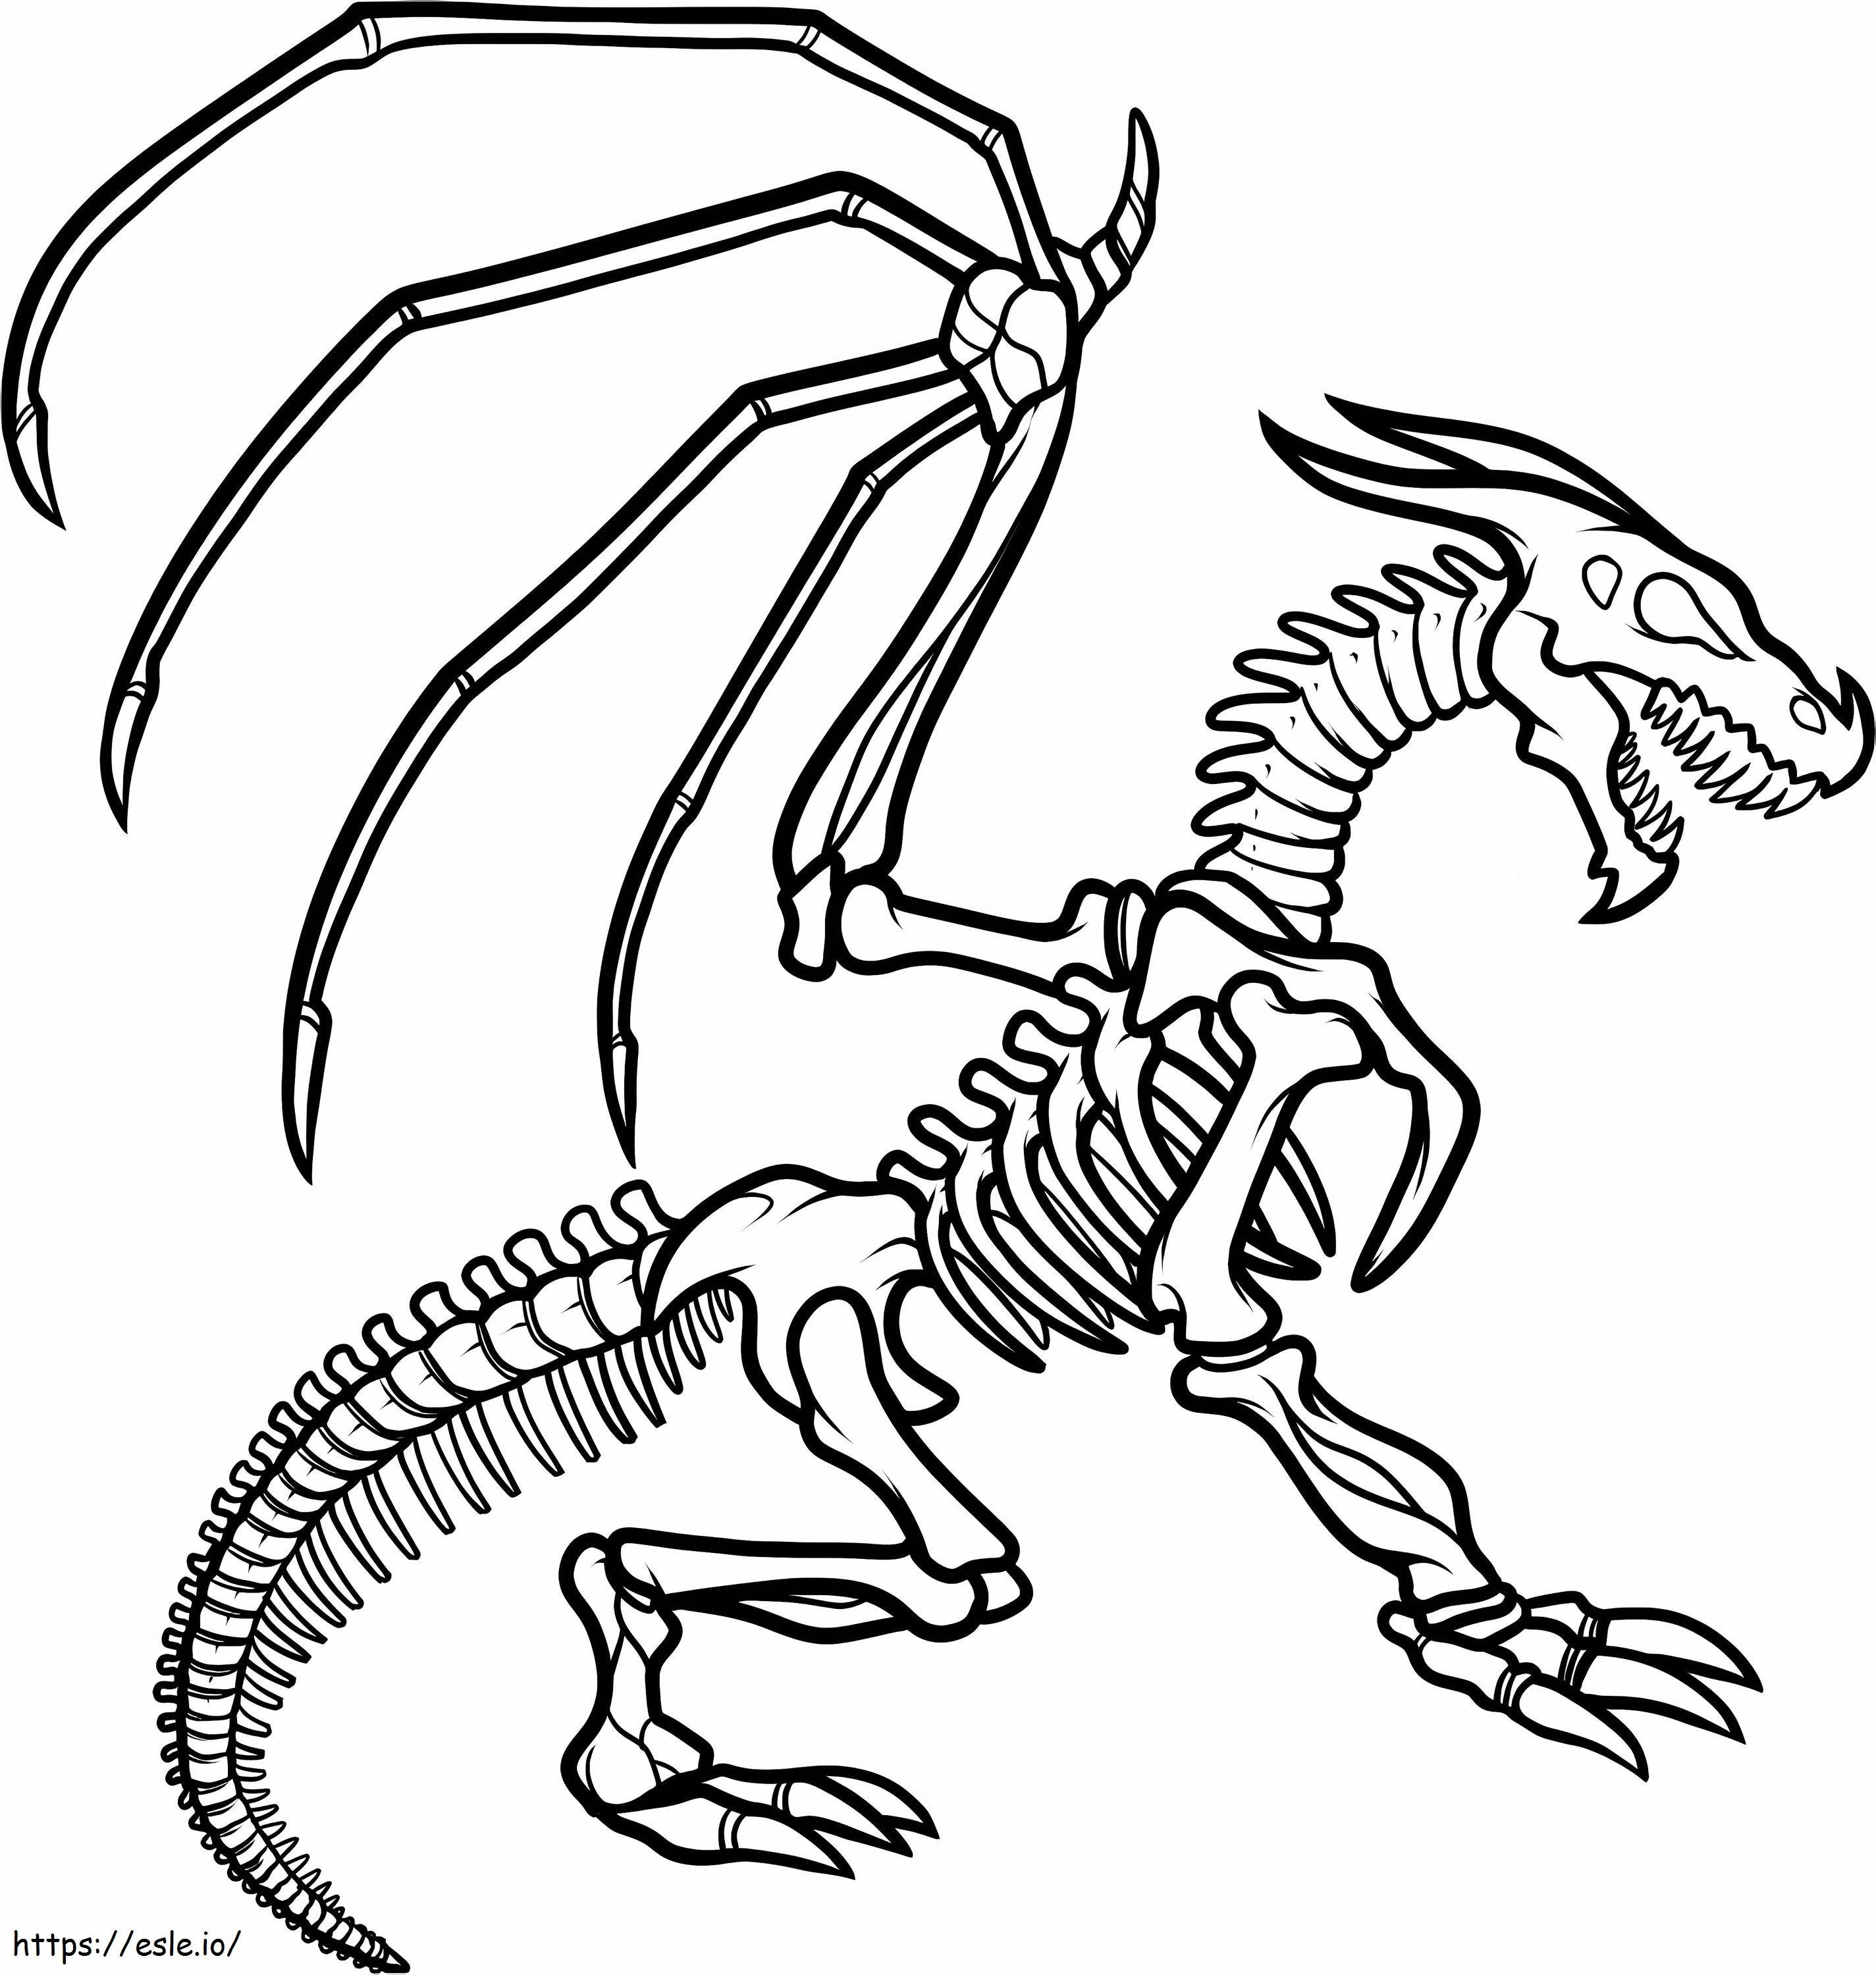 1547520862 Preșcolar Cum să desenezi schelet de dragon schelet de dragon de Ilovepacsterandclyde D8Jkzcq de colorat